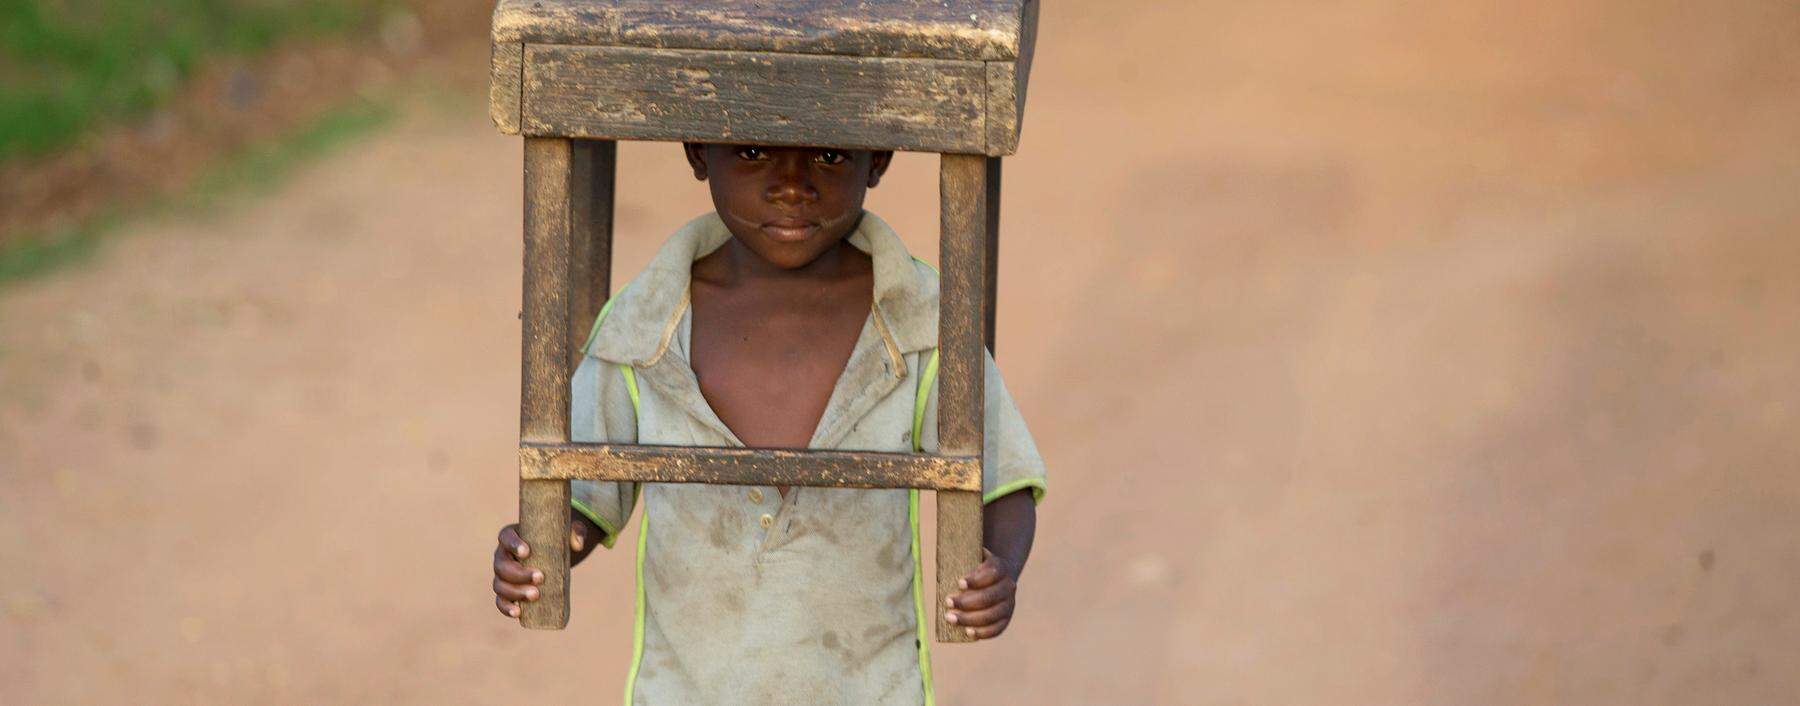 Ein Bub in der Zentralafrikanischen Republik. Krieg, Armut und Flucht bestimmen das Leben der 5,5 Millionen Einwohner in dem Land.